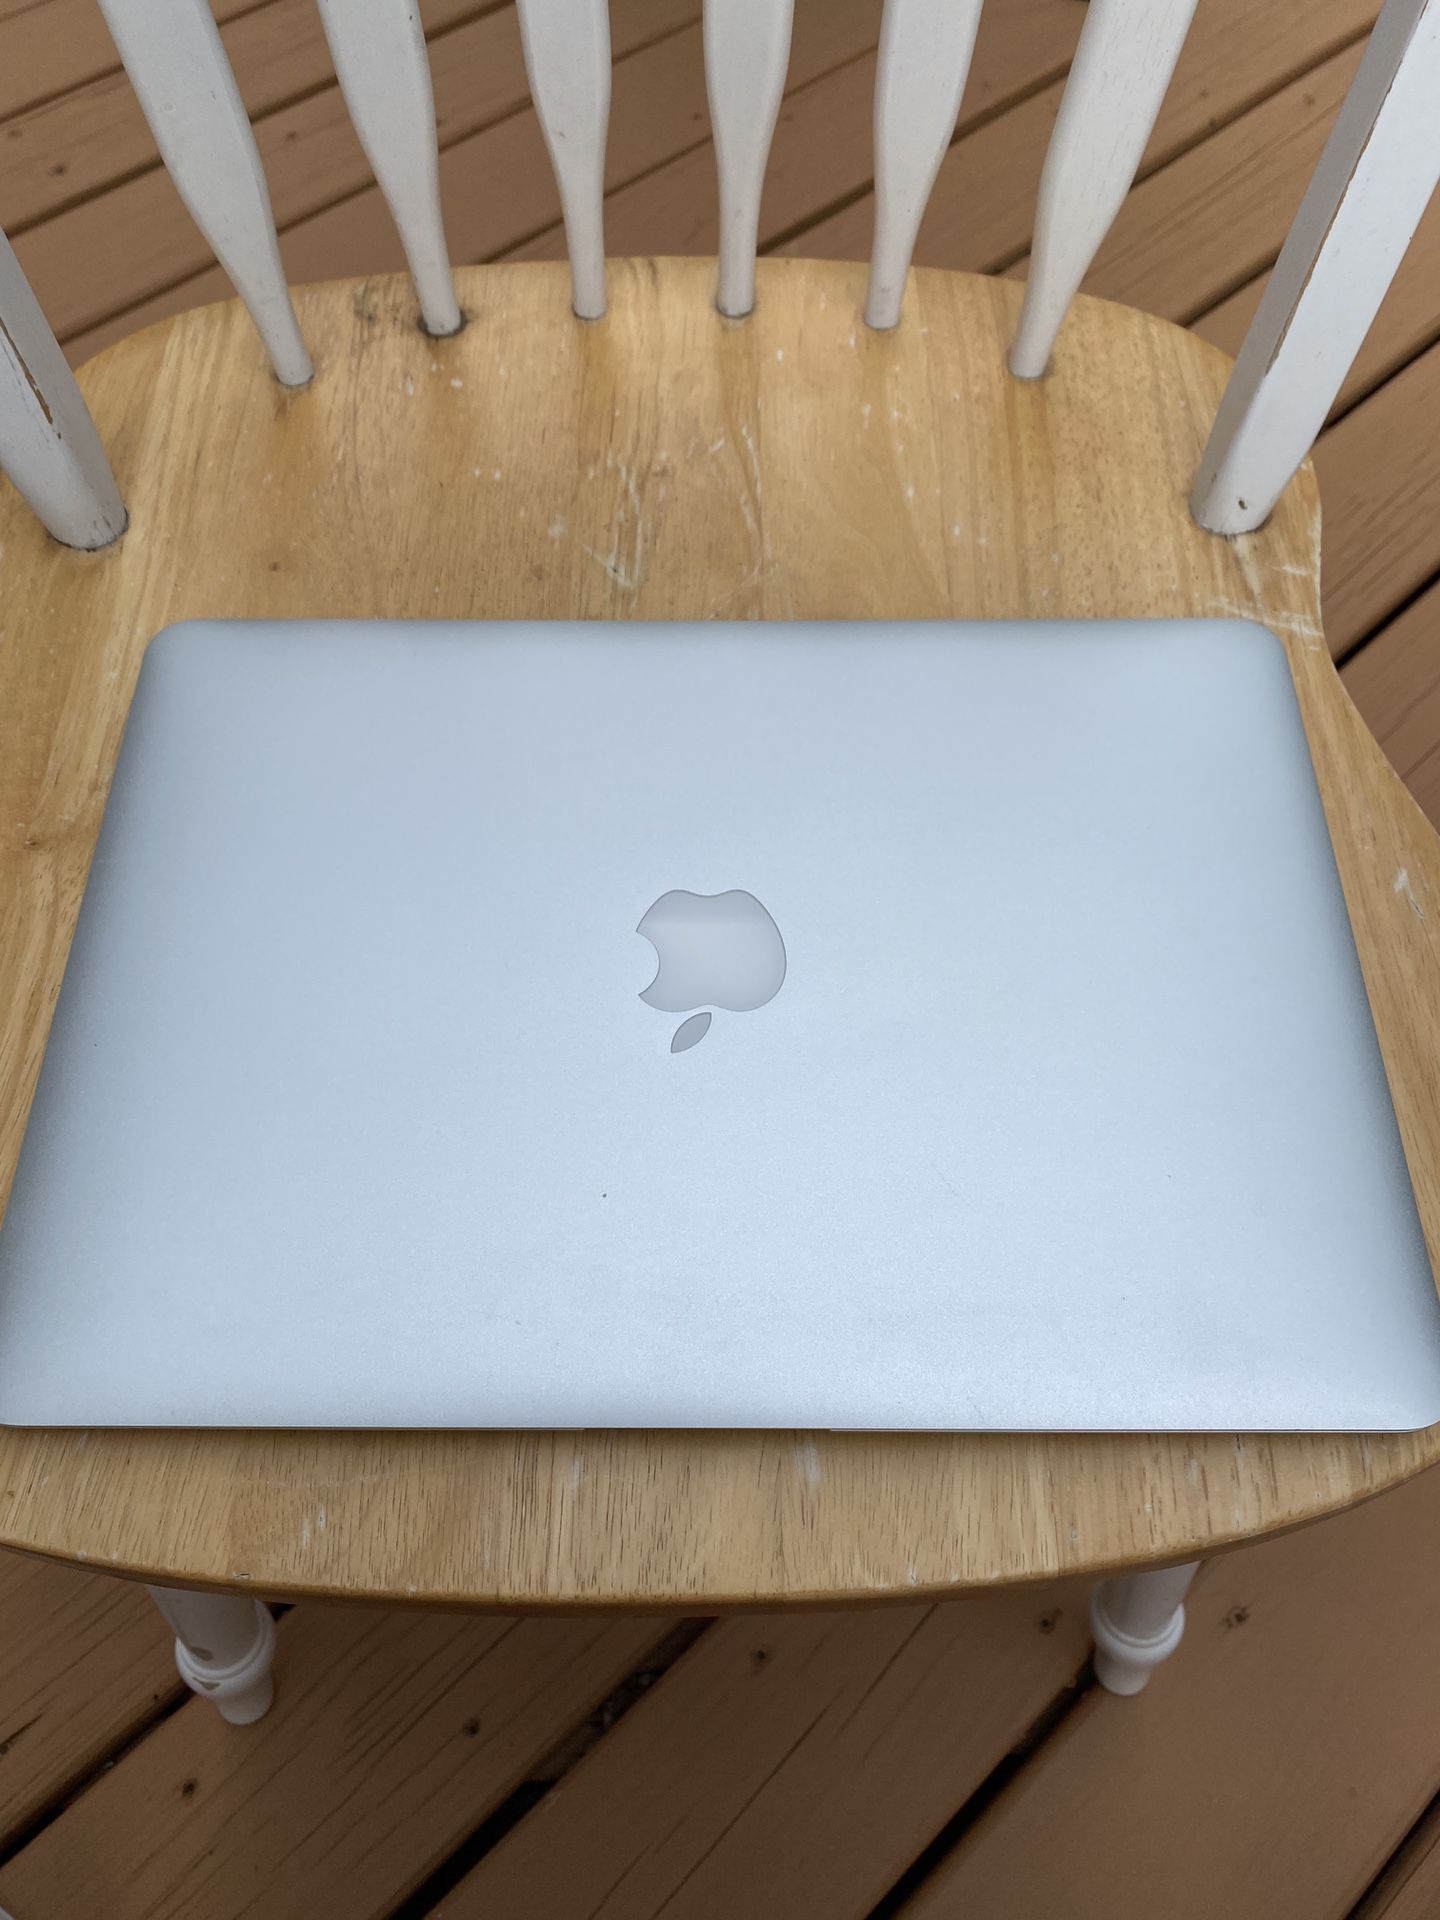 13” MacBook Air mid 2013